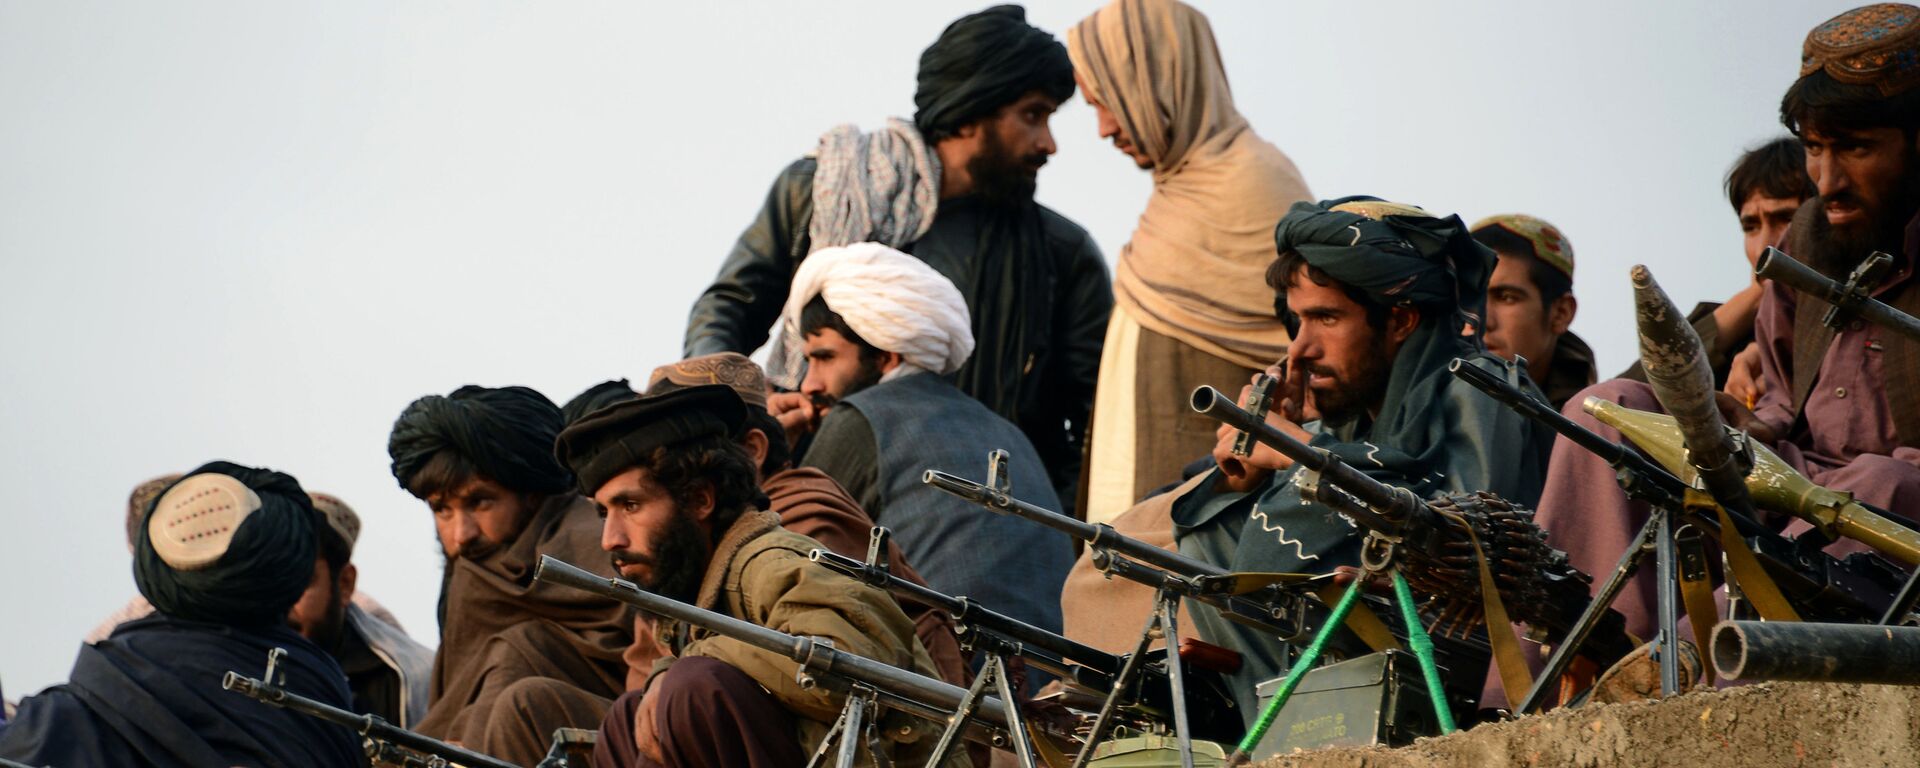 Combatientes de Talibán en Afganistán (archivo) - Sputnik Mundo, 1920, 26.03.2021